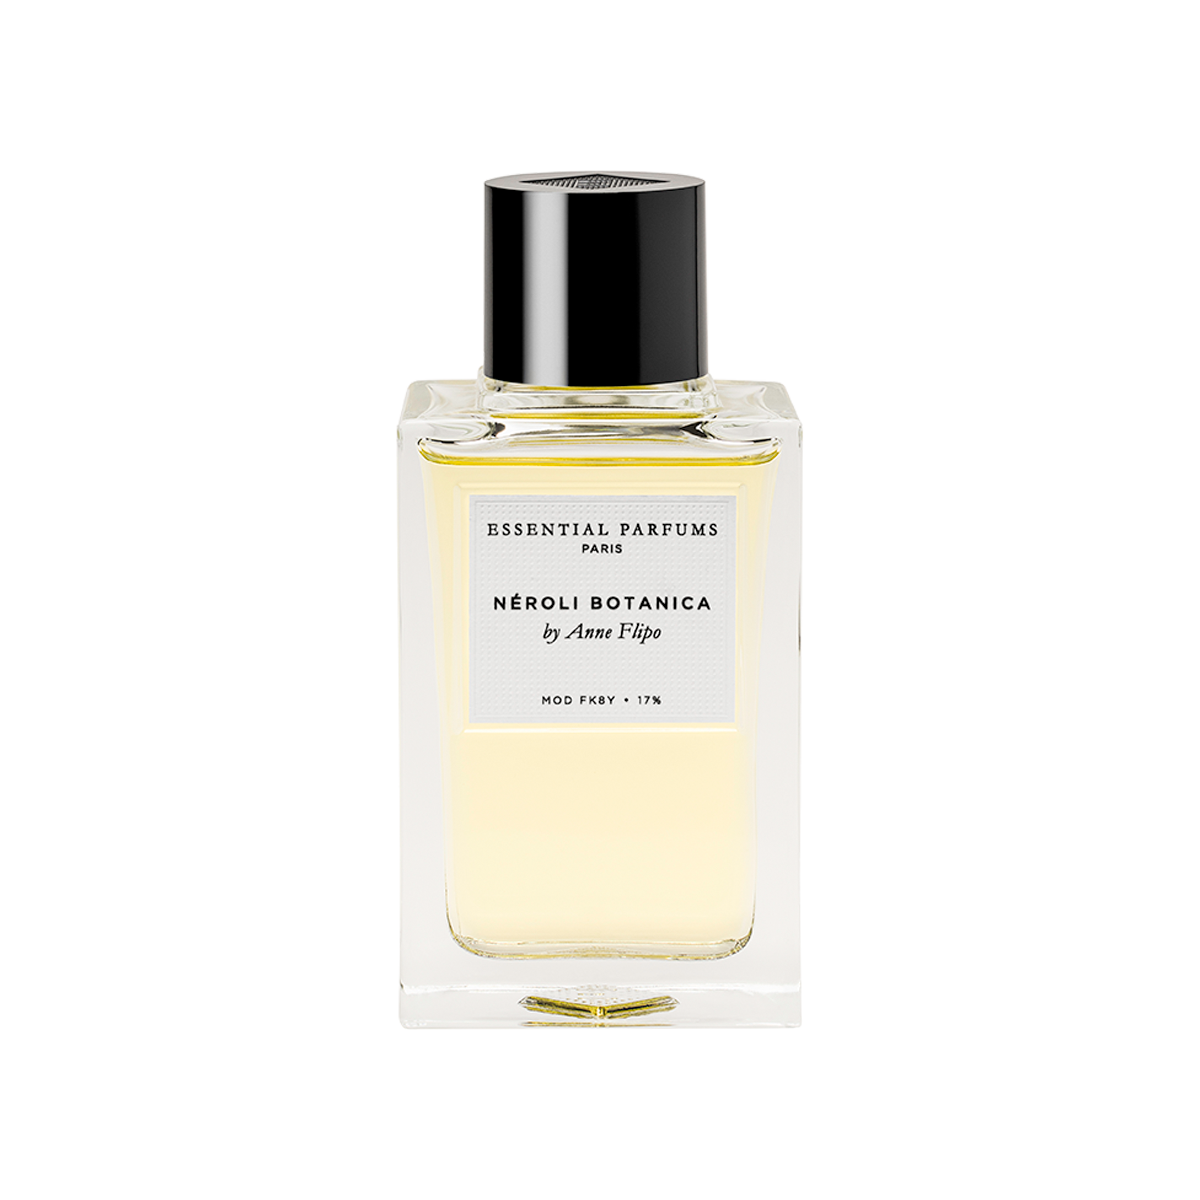 Essential Parfums - Neroli Botanica Eau de Parfum